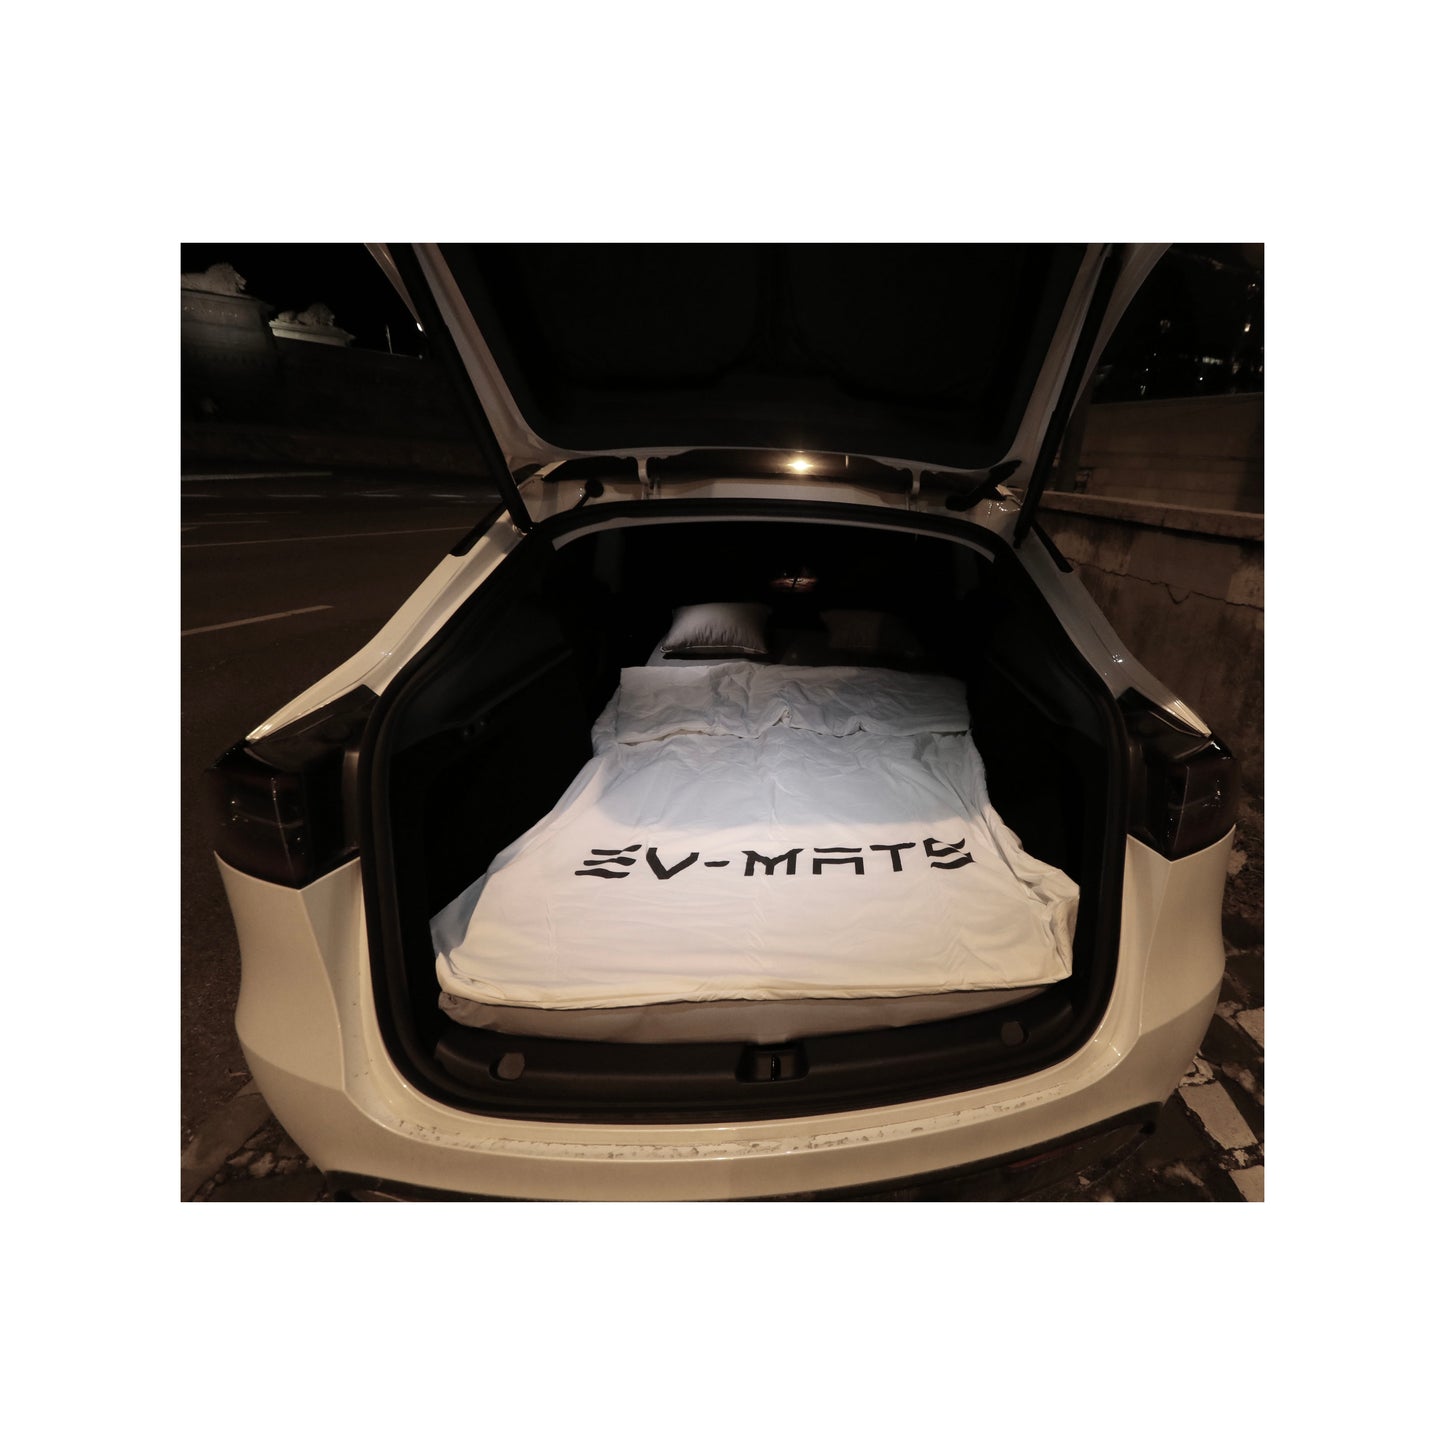 EV-MATS Basic CAMP SET, Tesla Model 3 için Tesla yatağı, Tesla Model 3'ün arka bagajına uygun su geçirmez çanta, bir çarşaf, bir yorgan, 2 yastık ve bir yastık kılıfını içerir